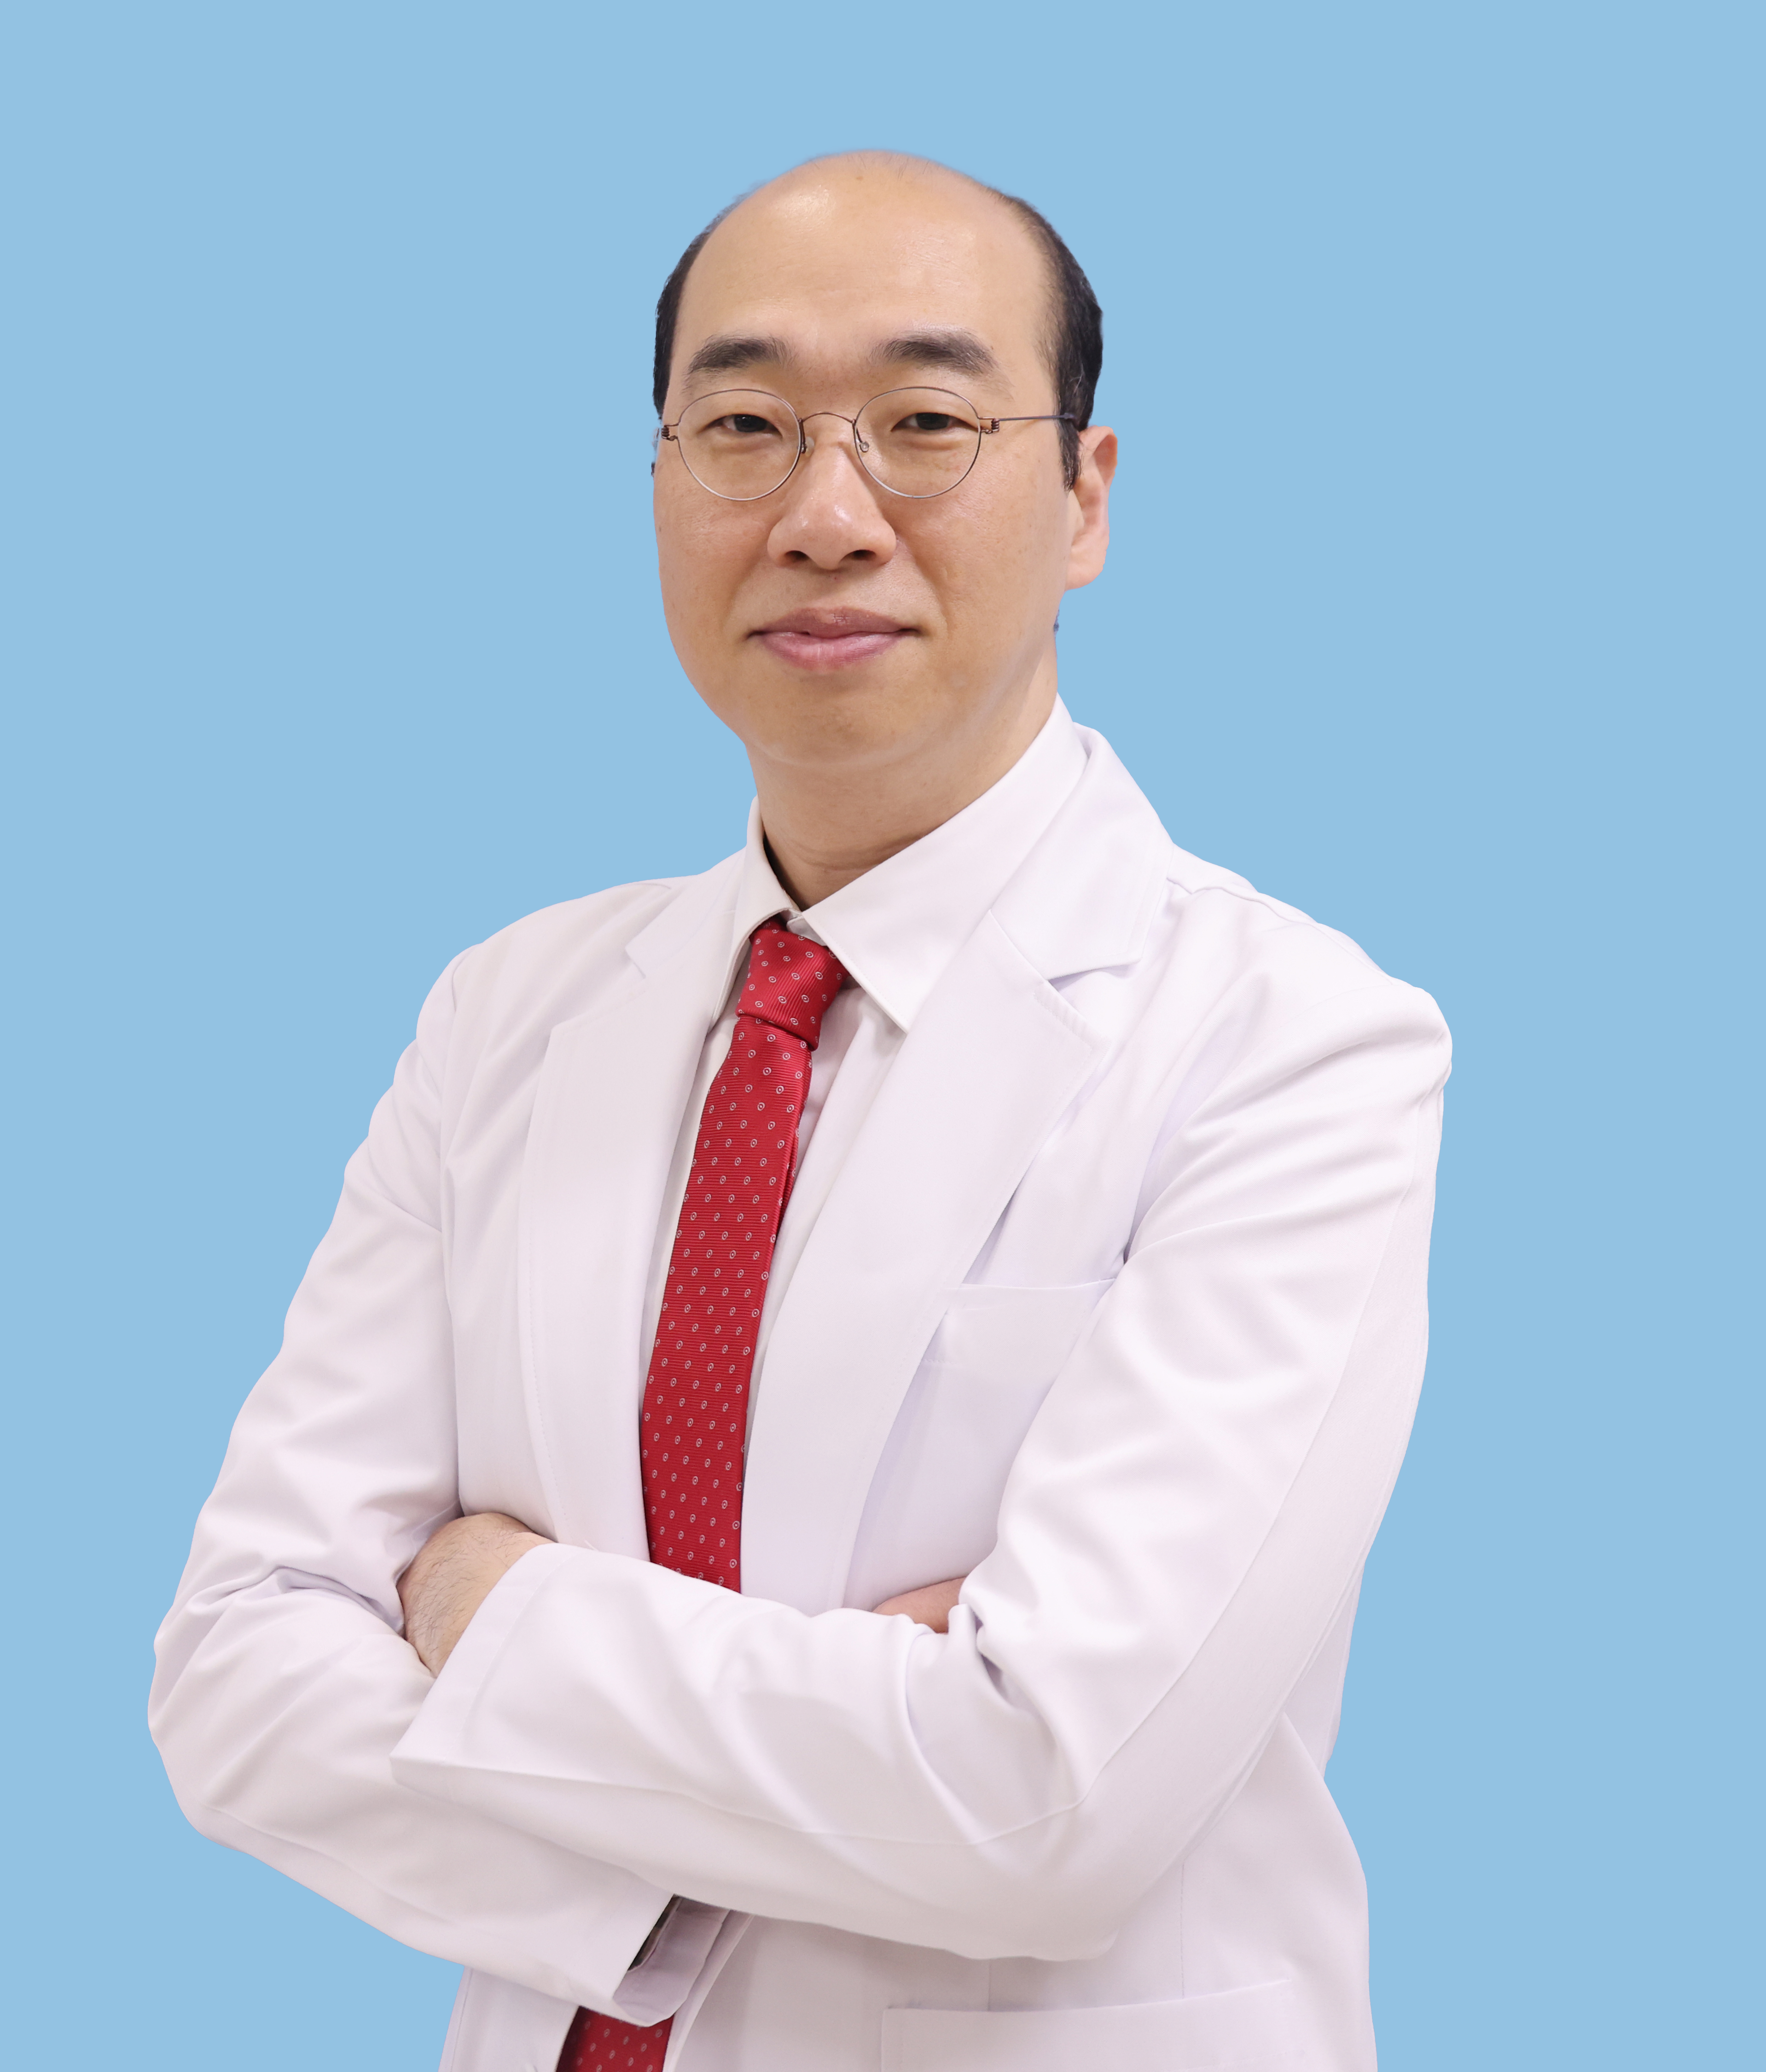 김성묵 교수 프로필